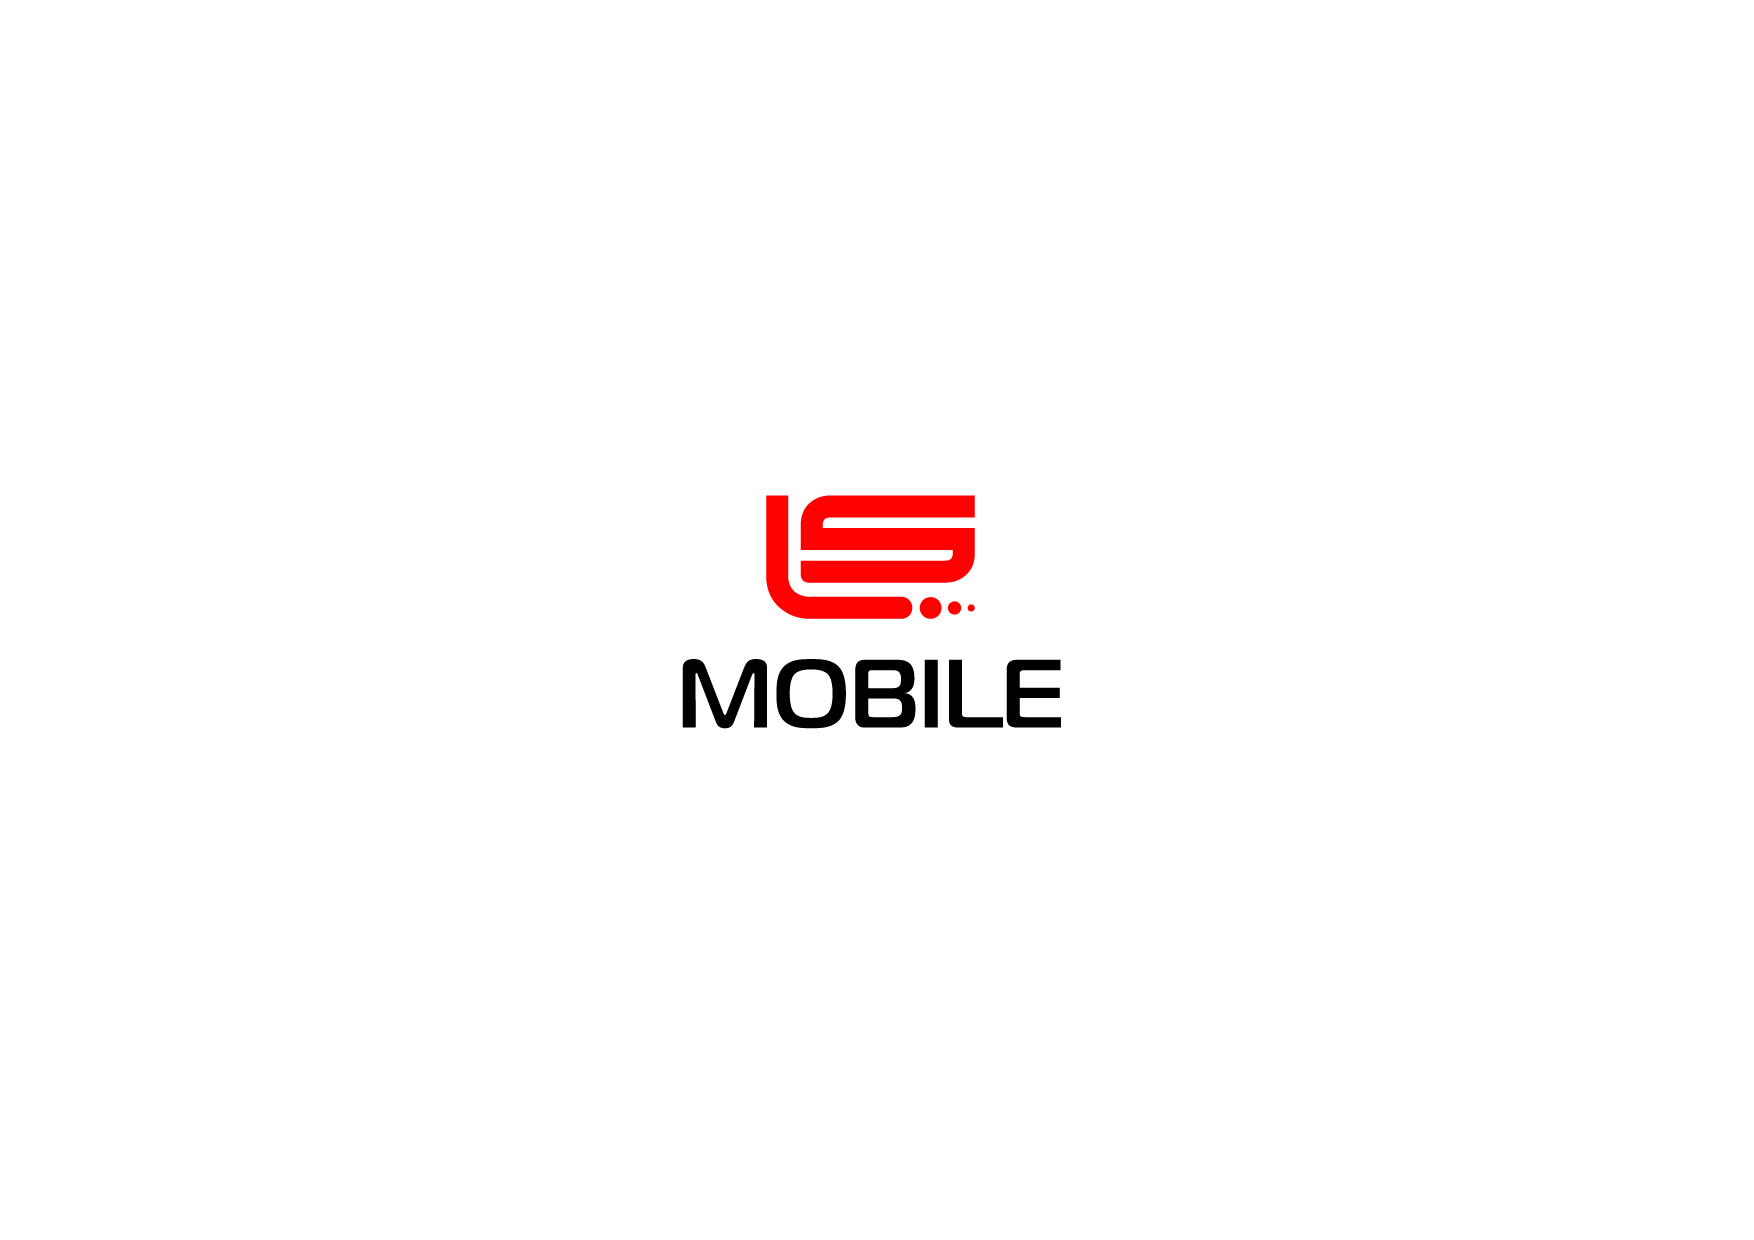 Site mobiles ru. Мобилка лого. Мобилка логотип и магазин.